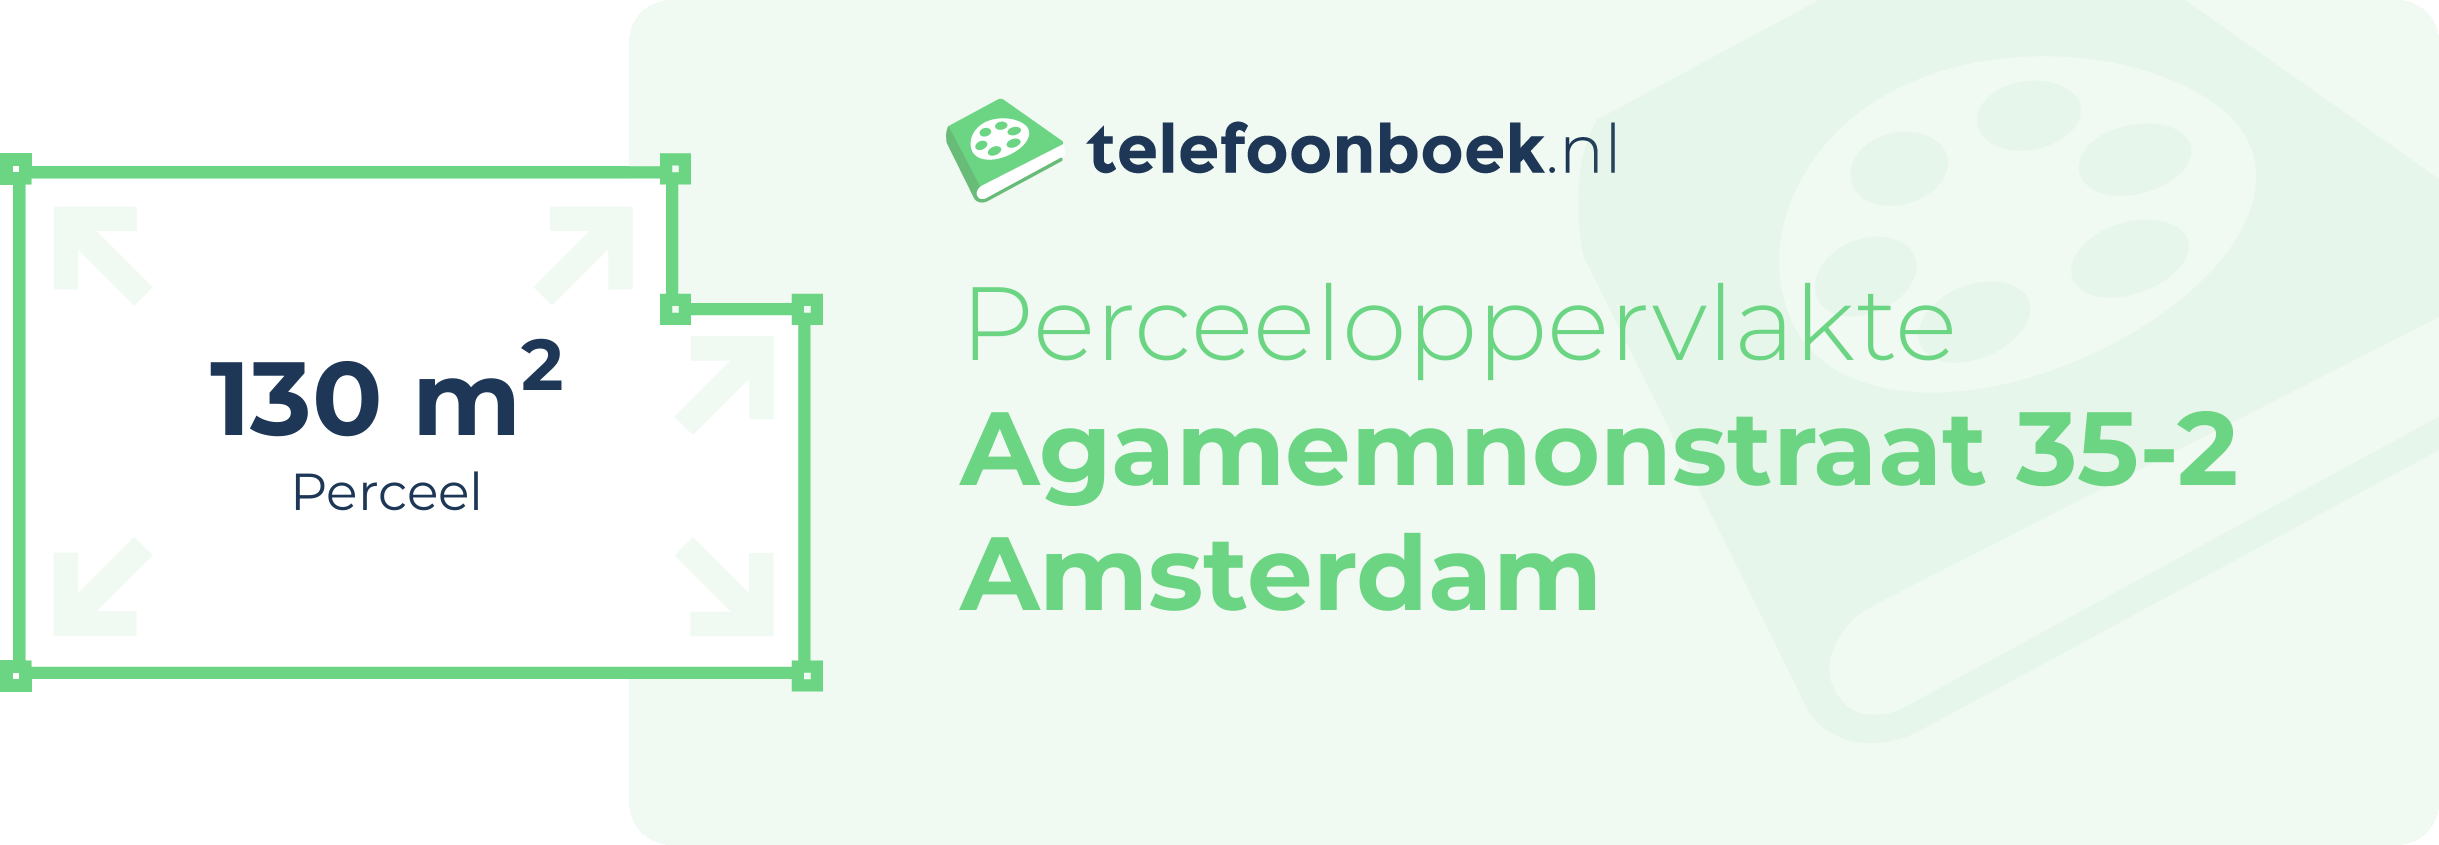 Perceeloppervlakte Agamemnonstraat 35-2 Amsterdam